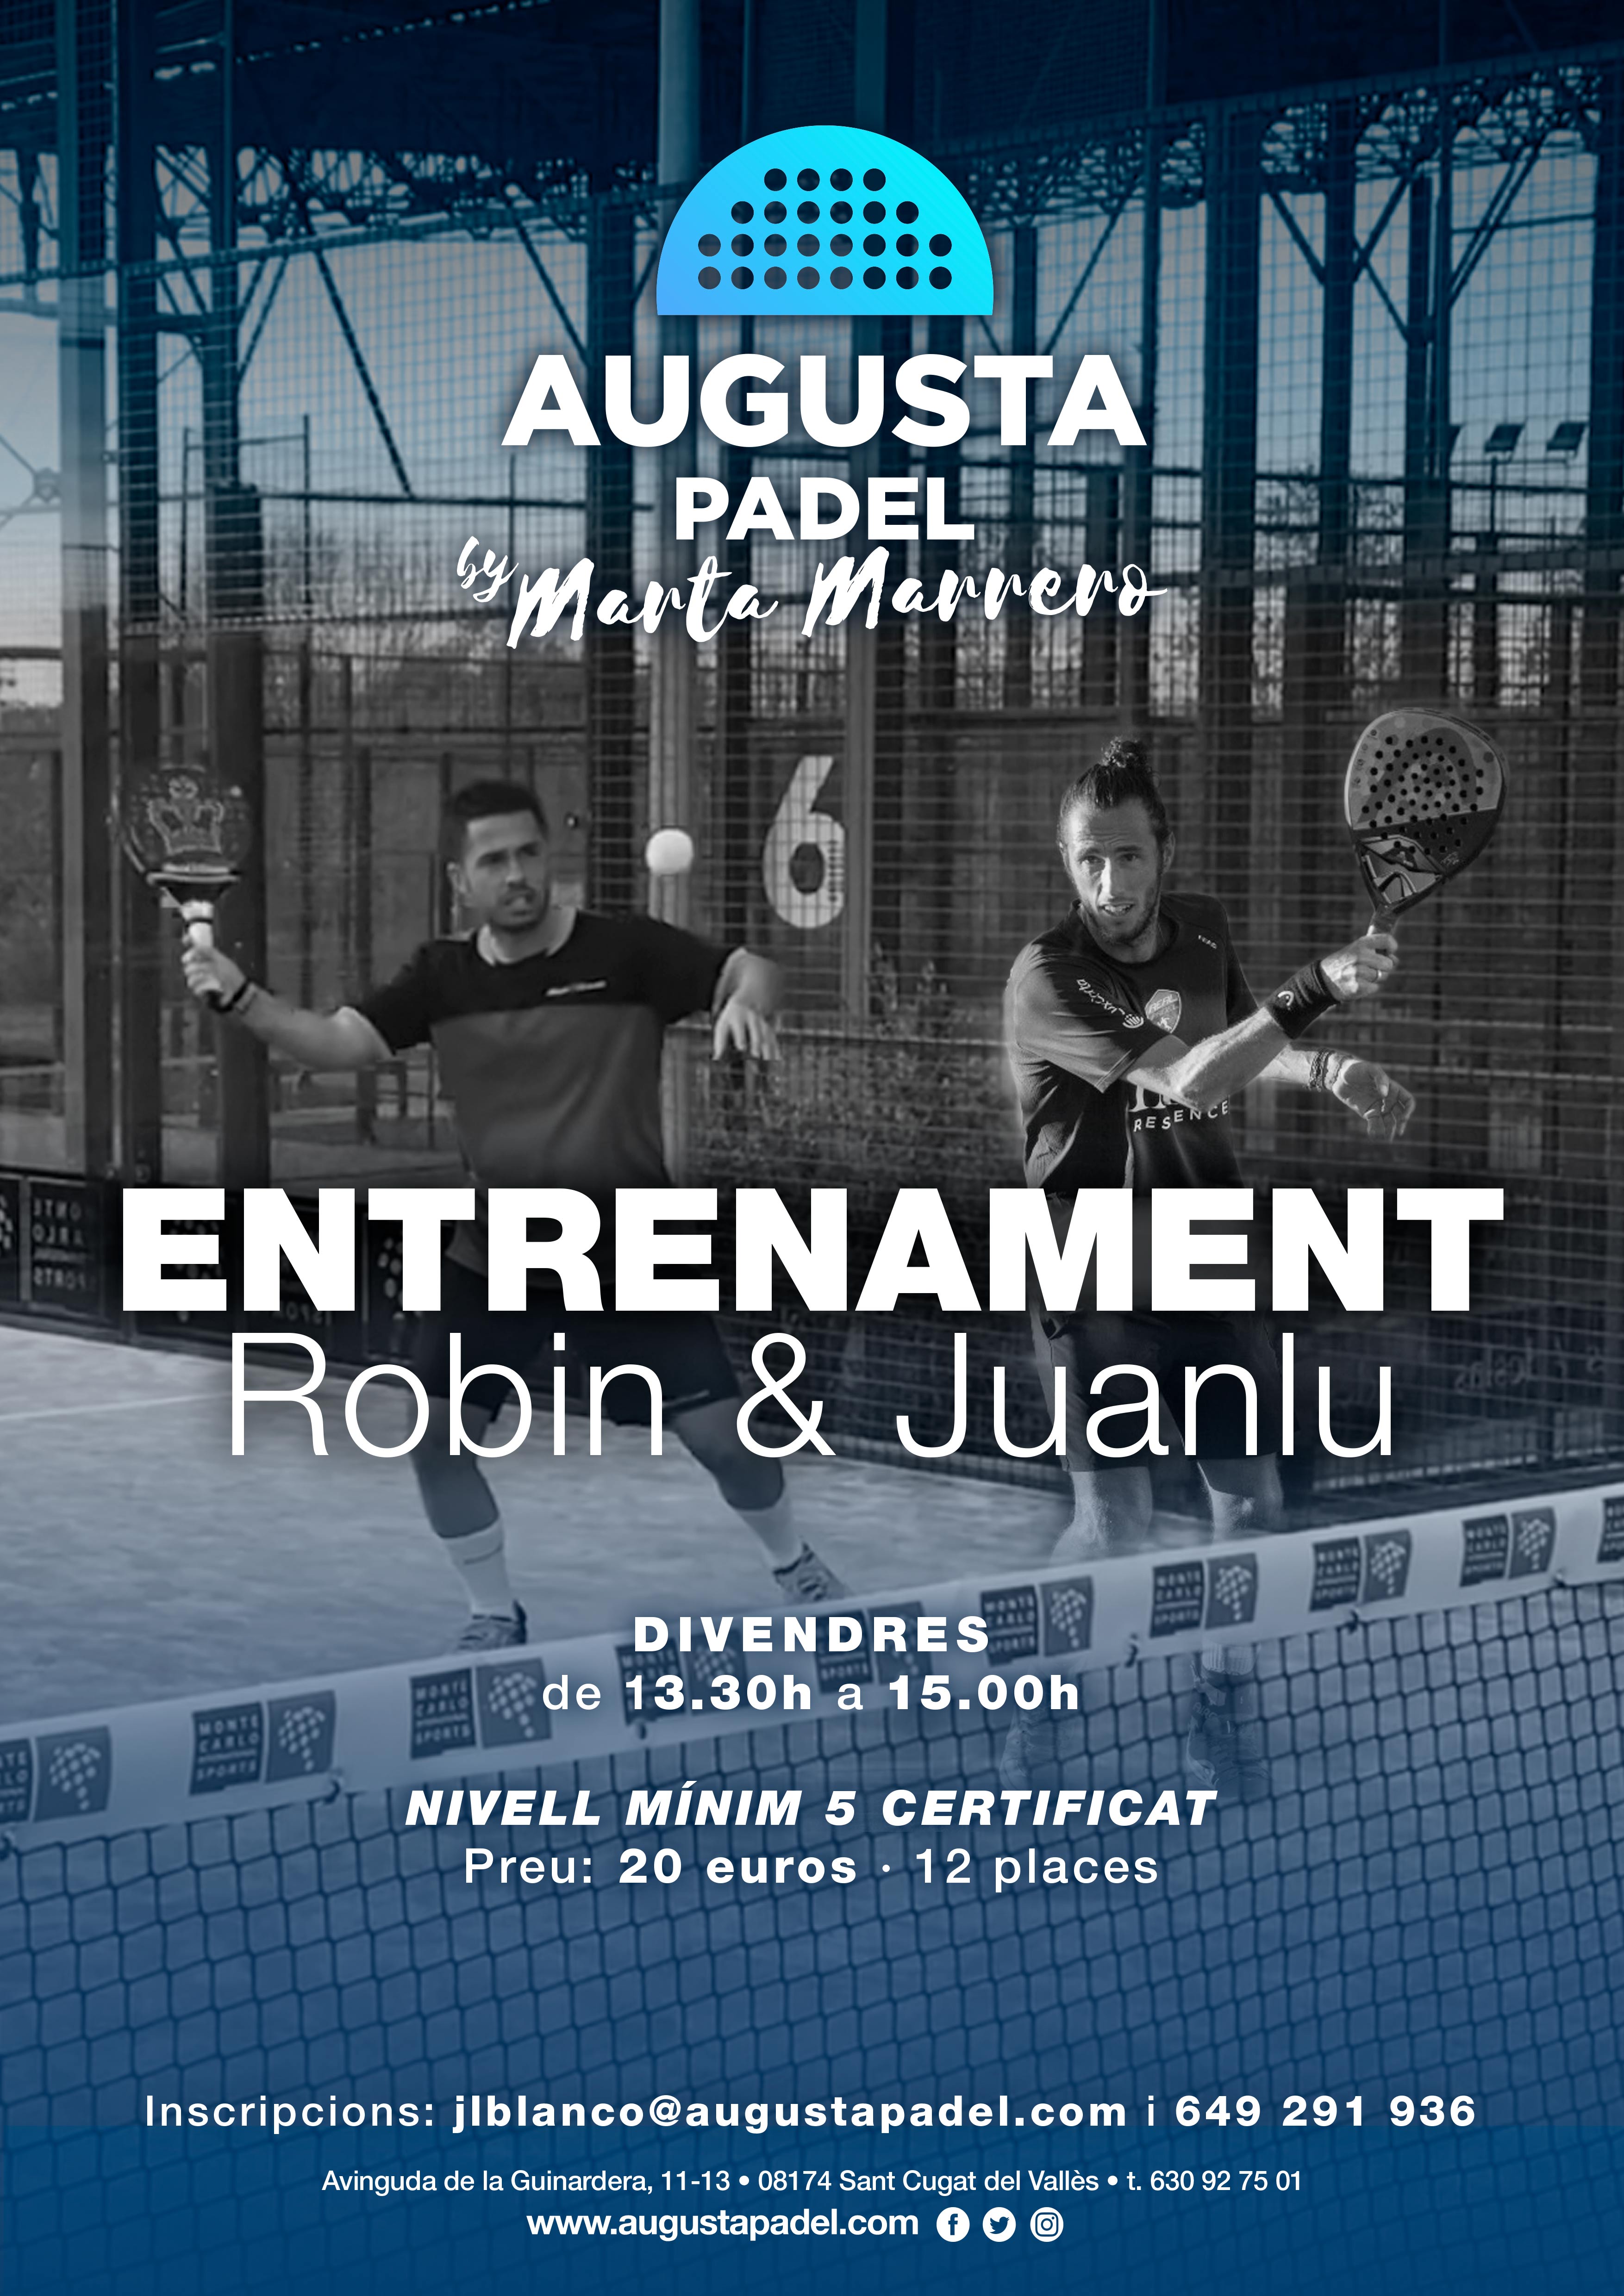 Entrenaments Juanlu & Robin